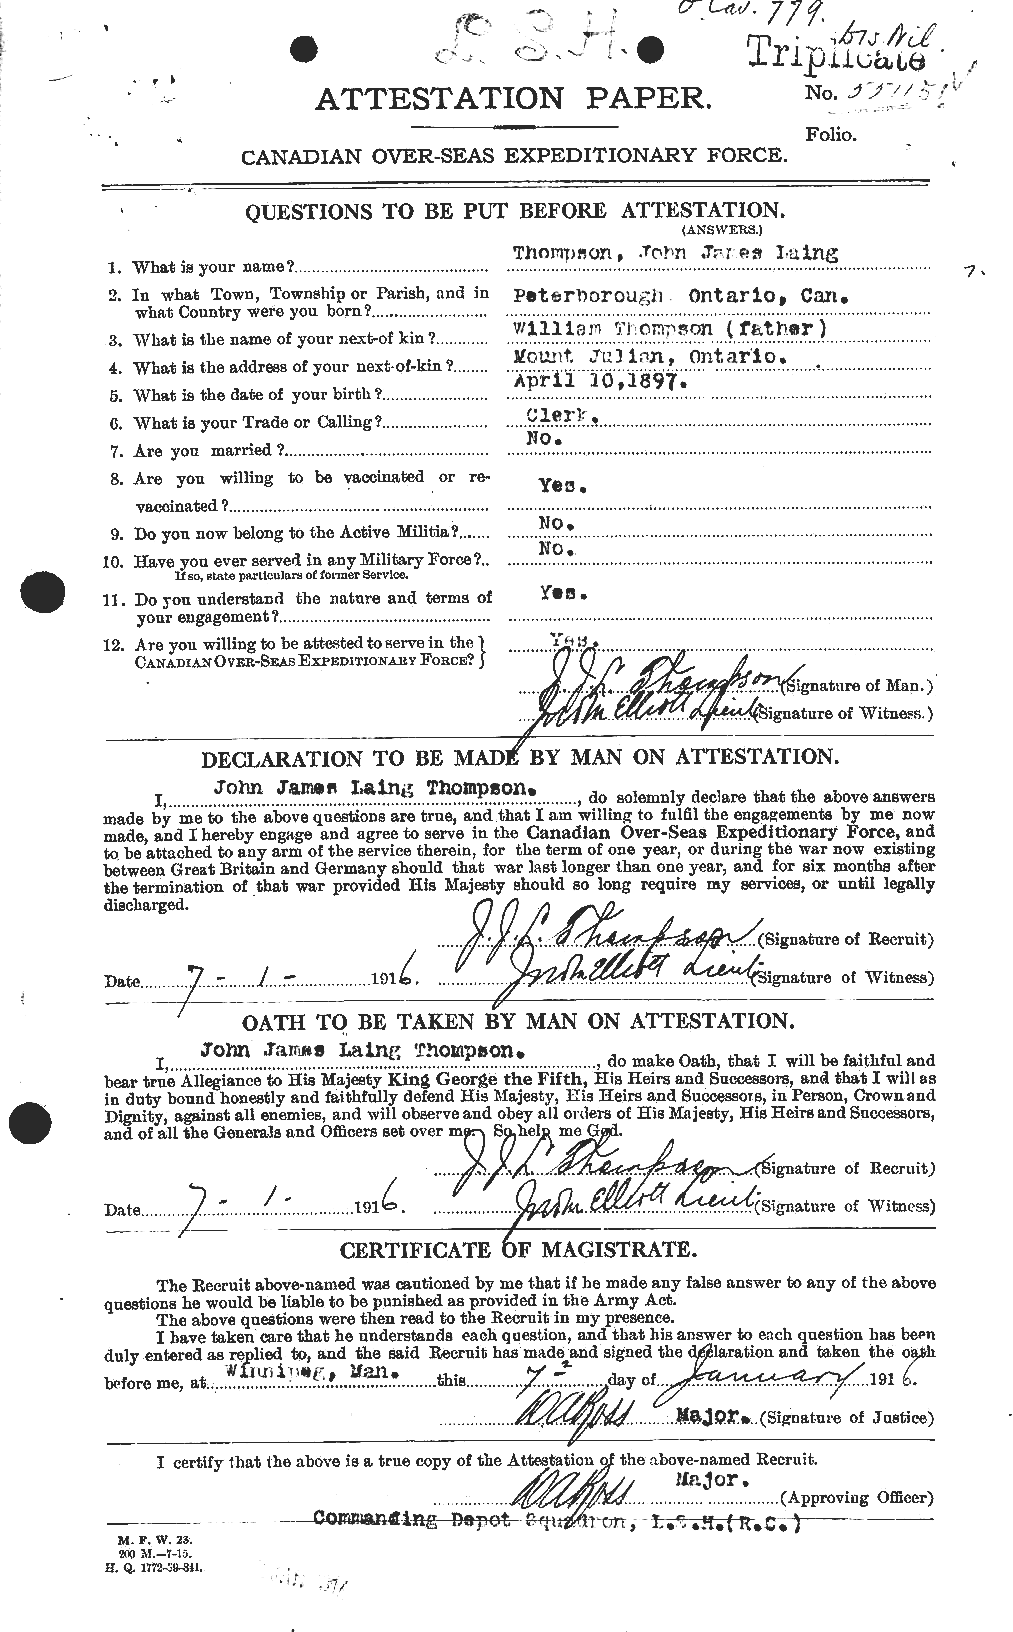 Dossiers du Personnel de la Première Guerre mondiale - CEC 630591a